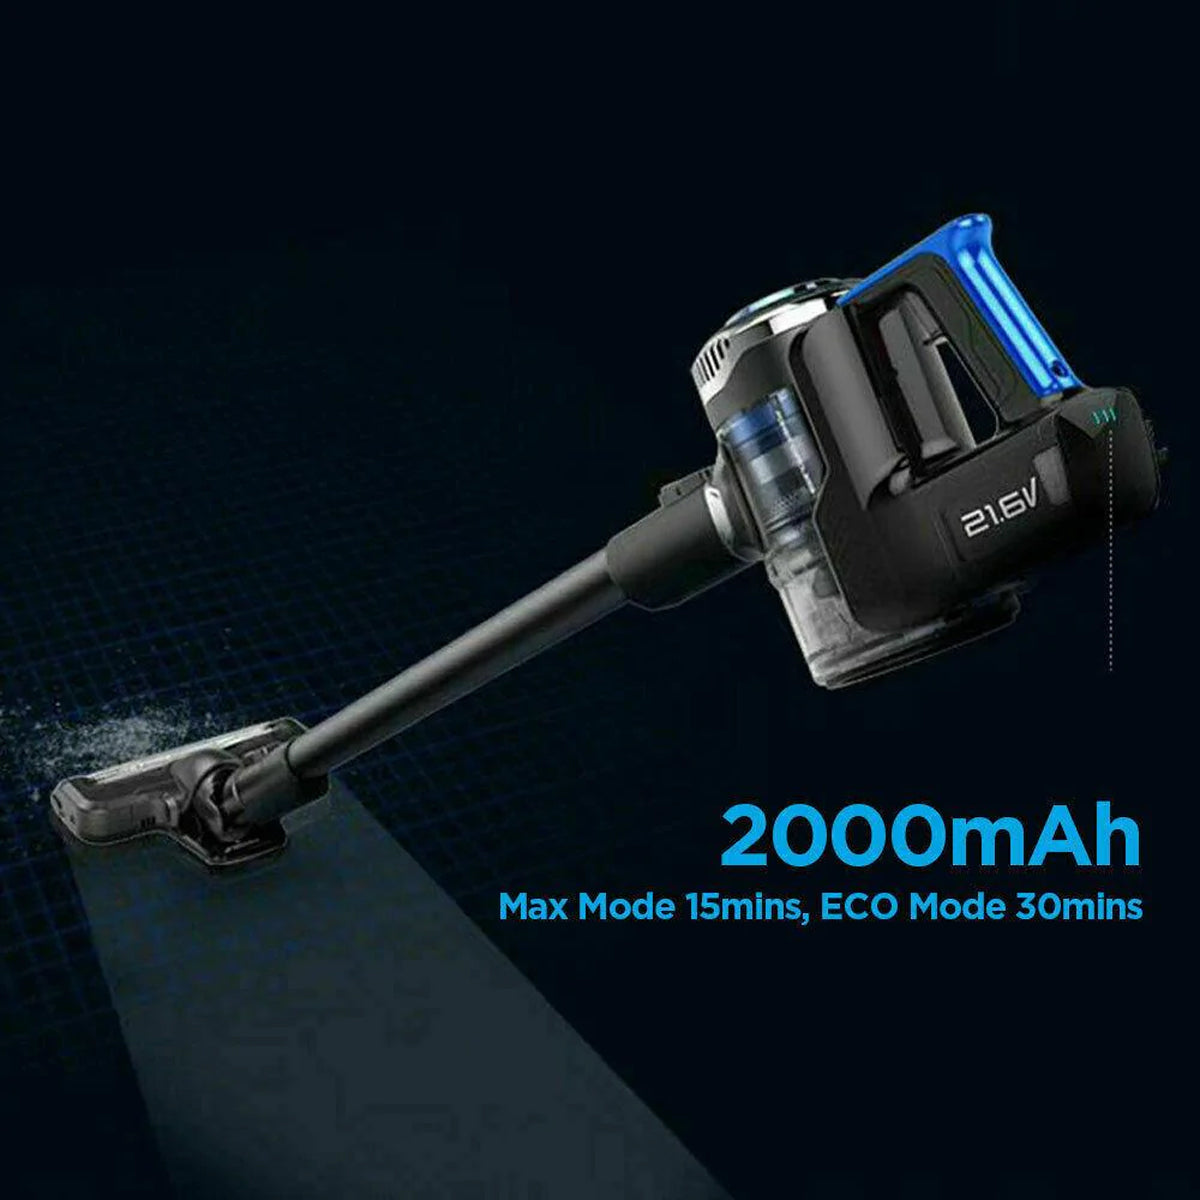 Midea 220W BLDC Cordless Vacuum Cleaner